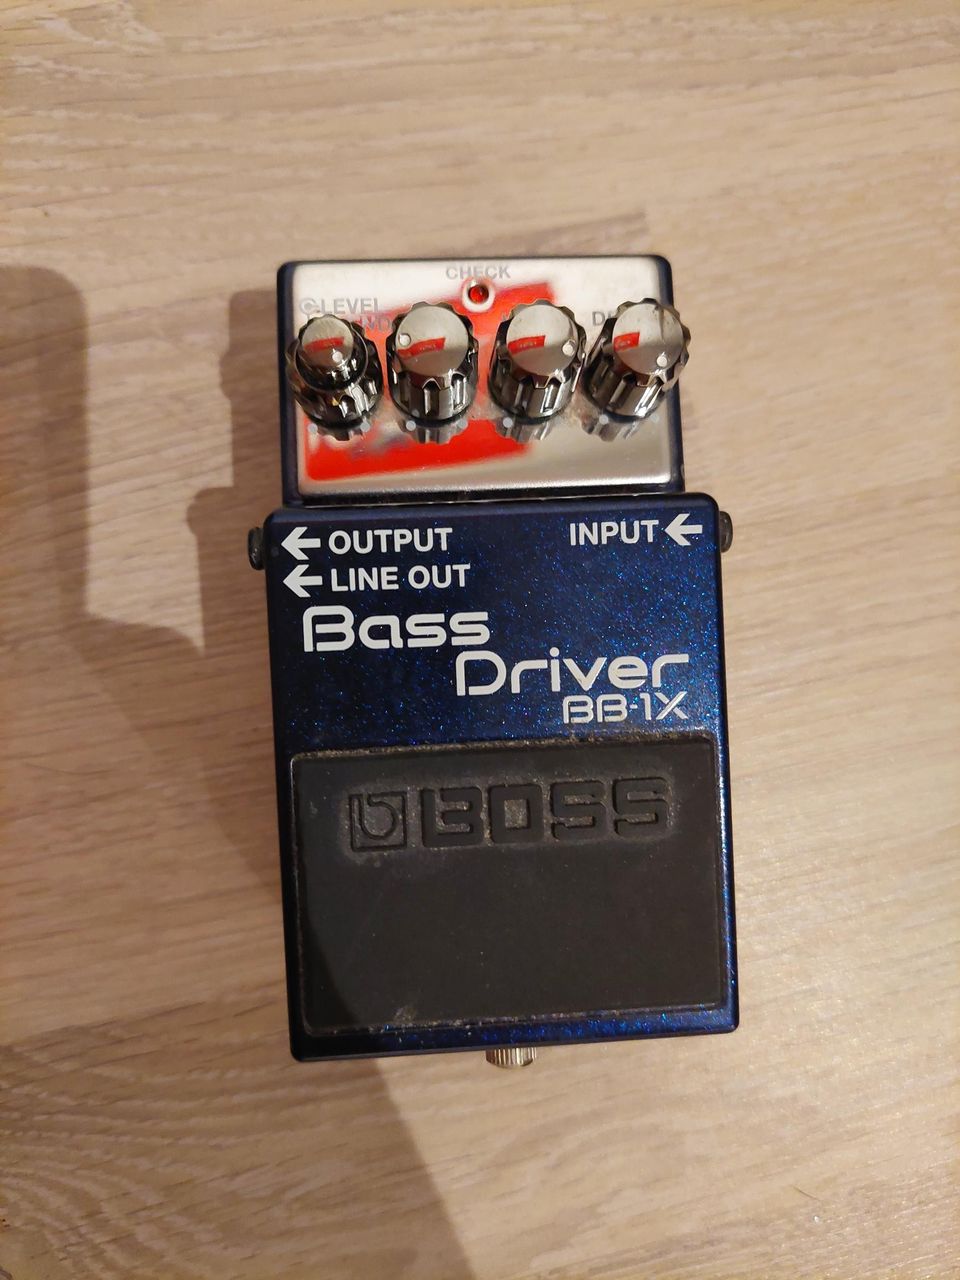 Boss Bass Driver BB-1X
    
51